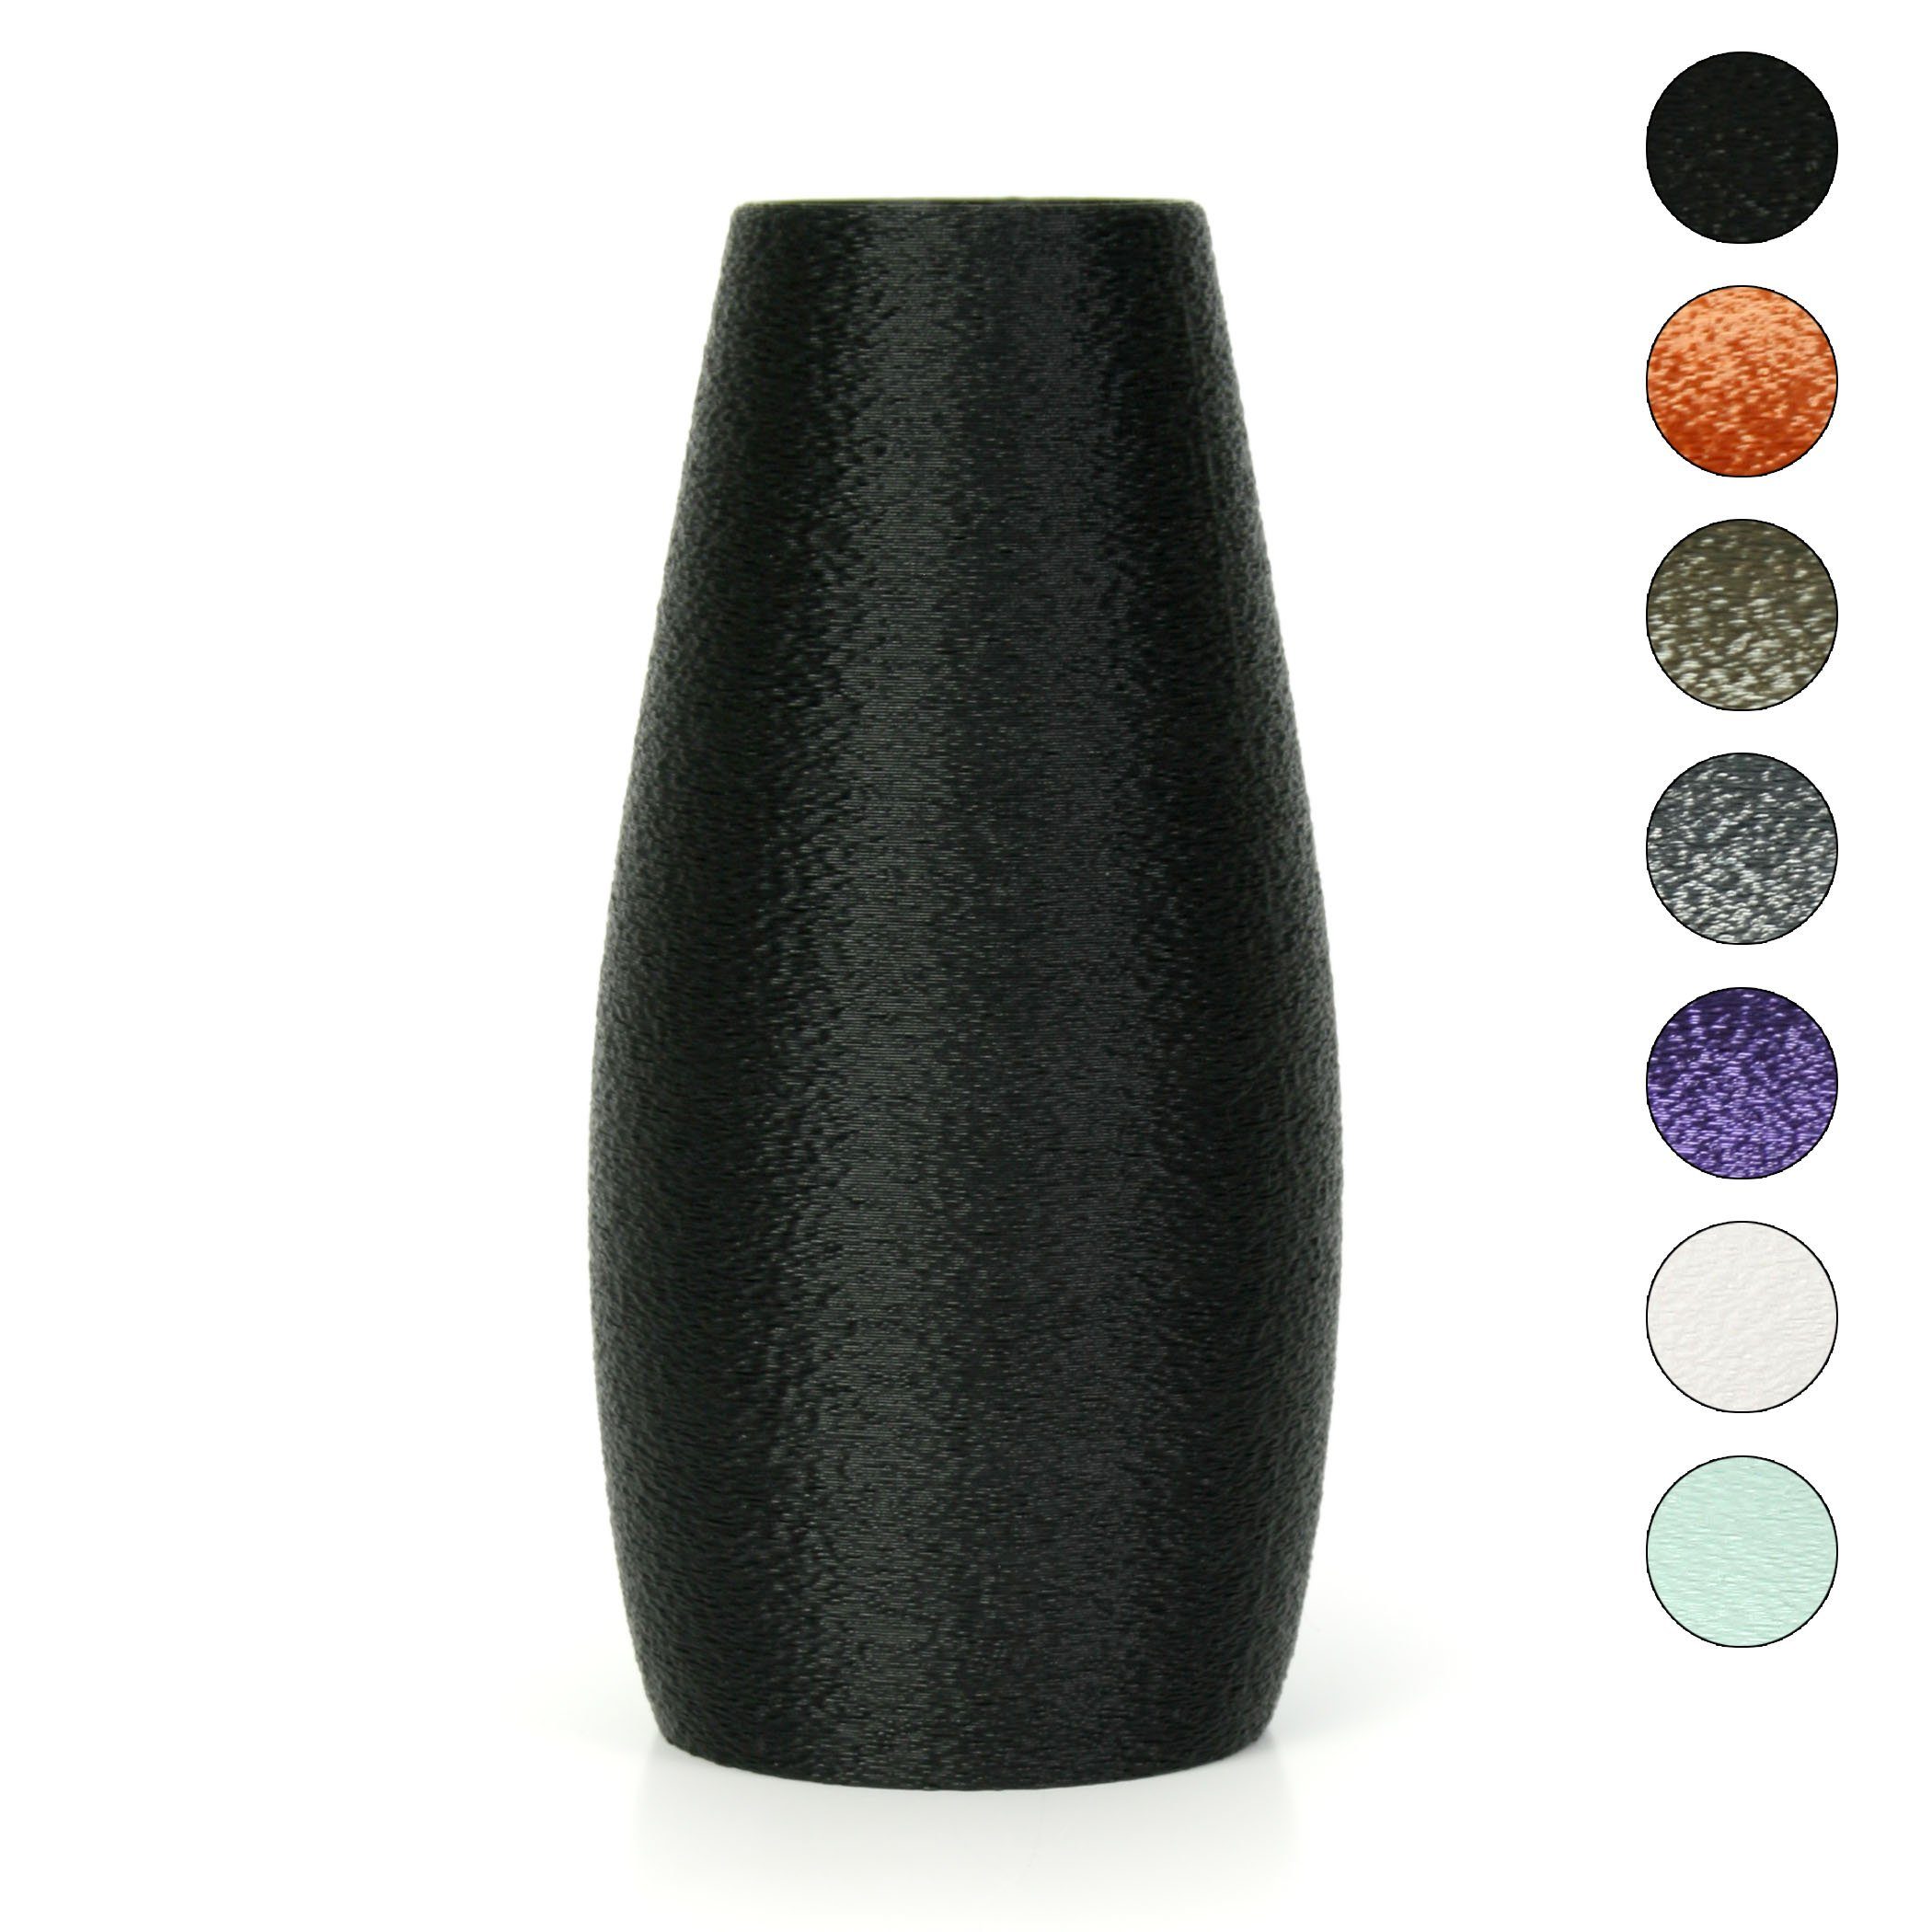 Kreative Feder Dekovase Designer Vase – Dekorative Blumenvase aus Bio-Kunststoff, aus nachwachsenden Rohstoffen; wasserdicht & bruchsicher Black